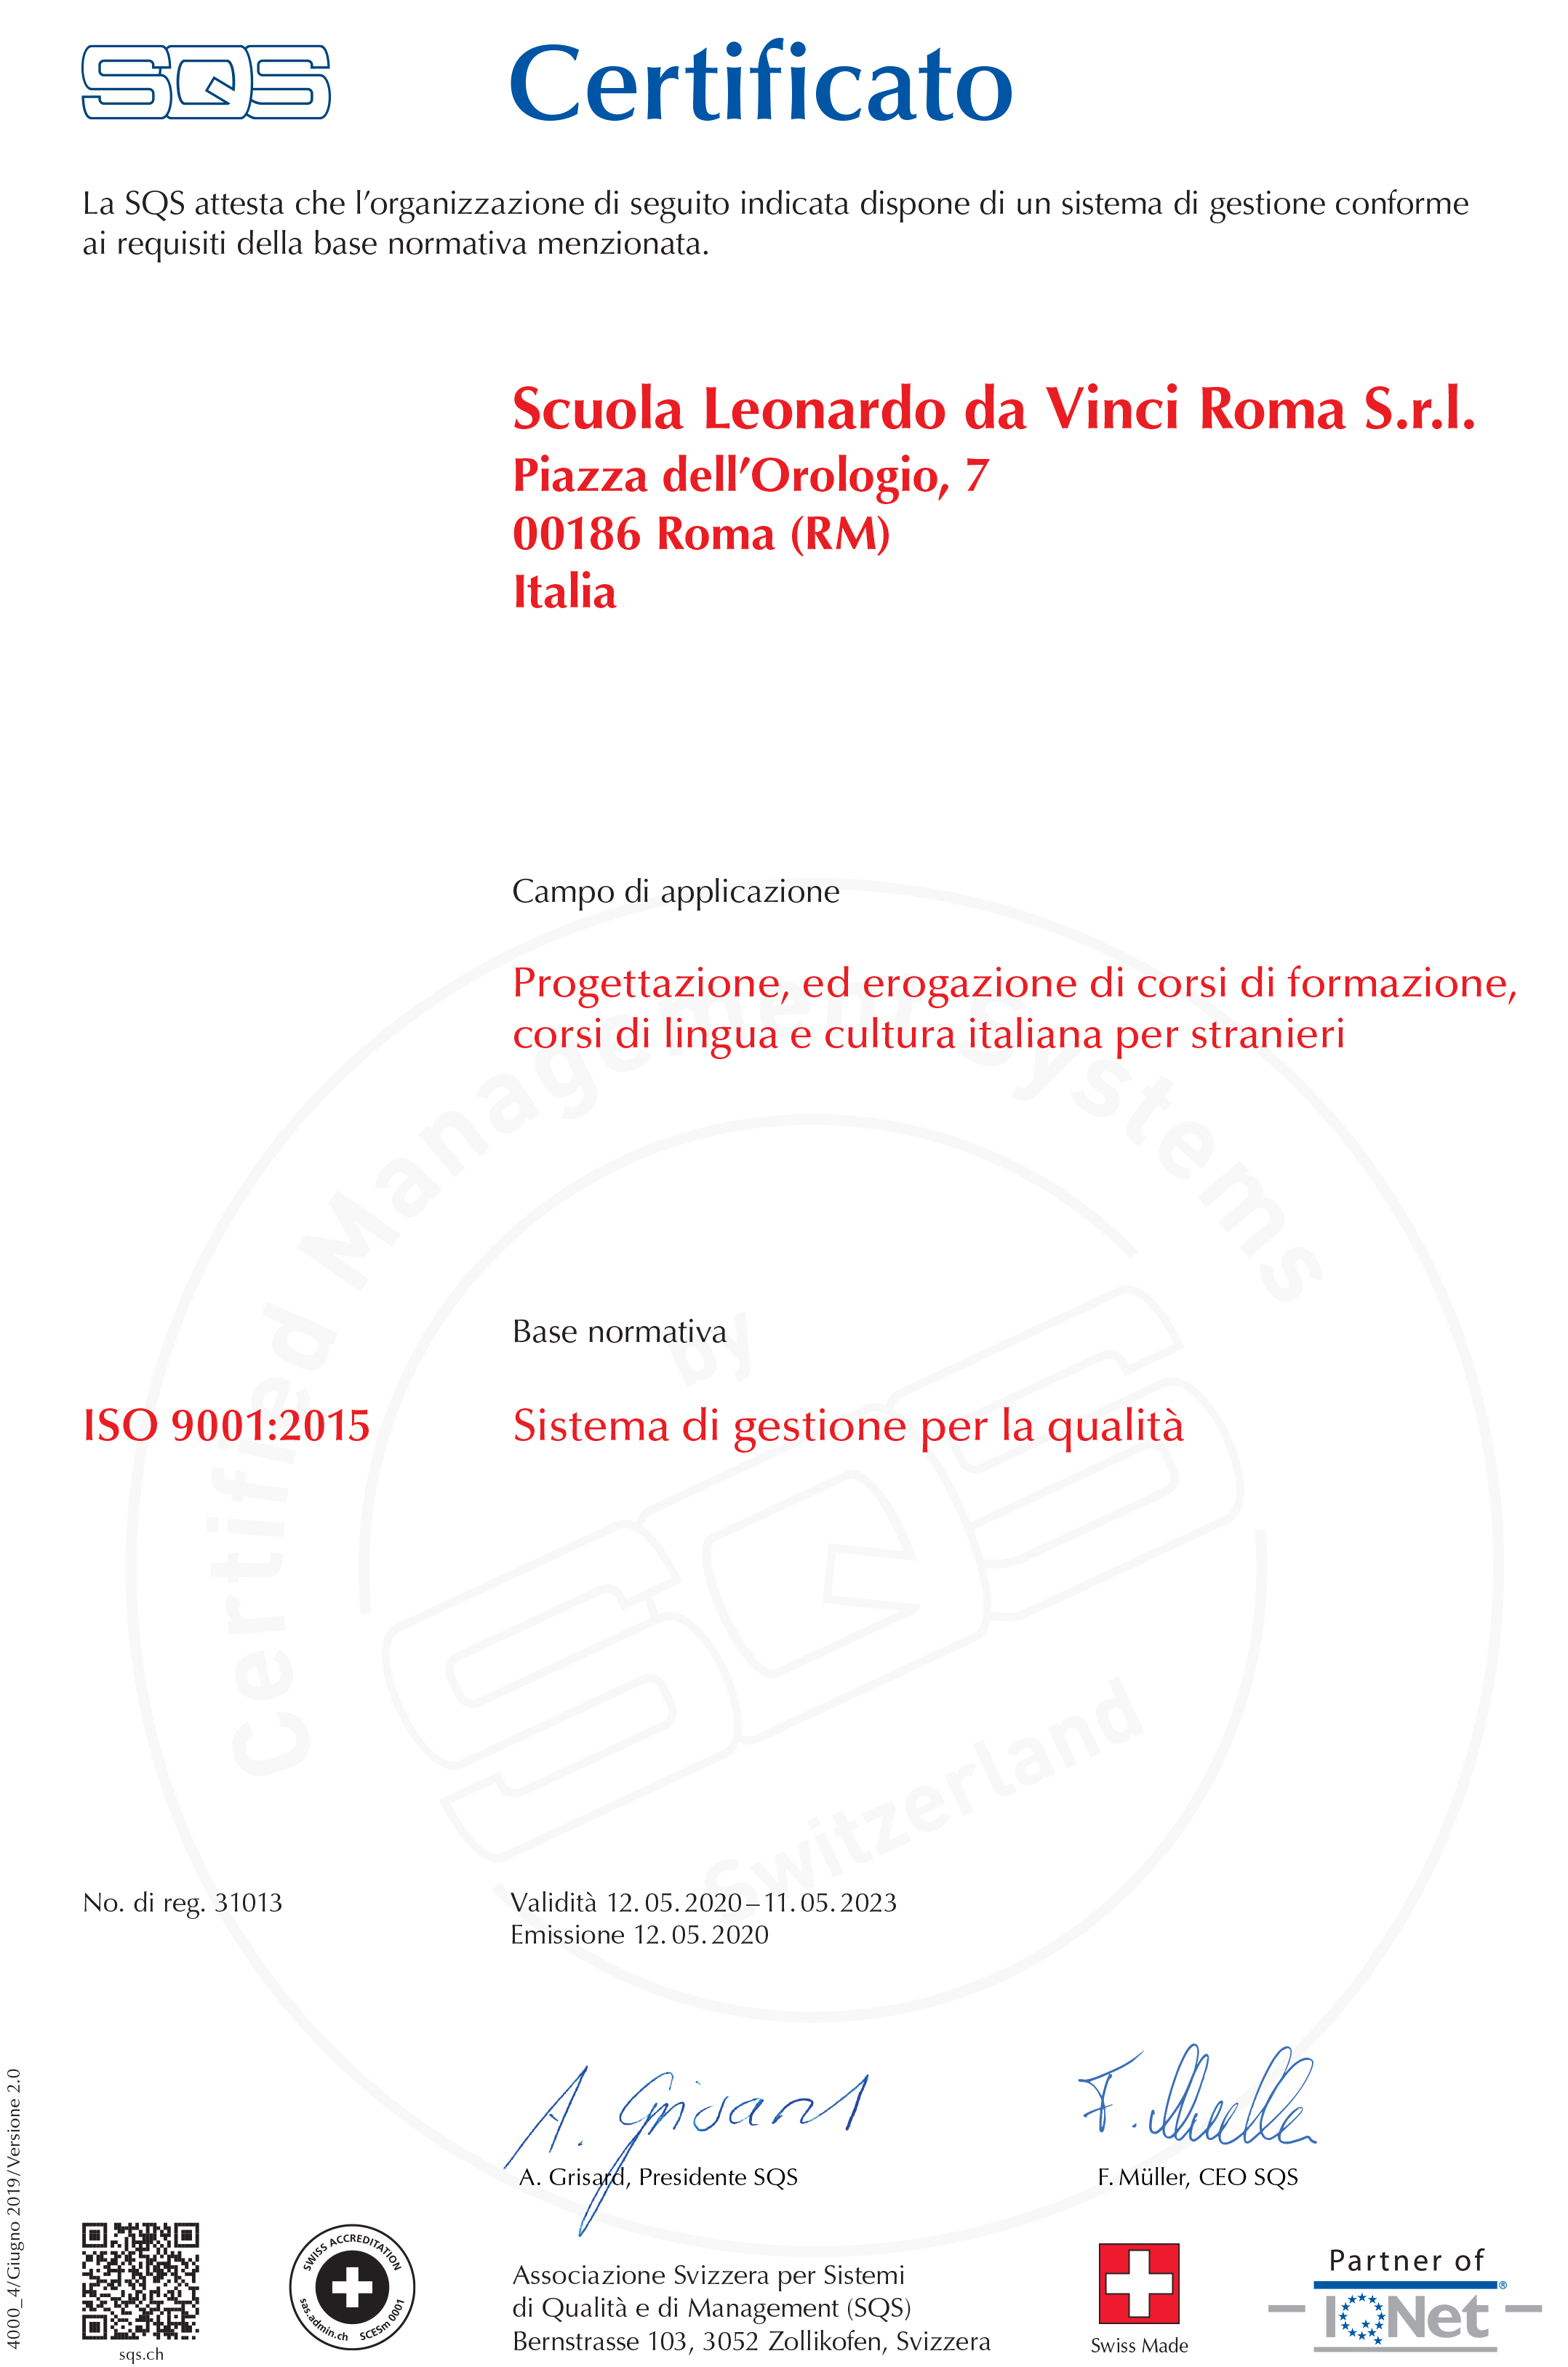 Notre école italienne à Rome est certifiée conforme à la norme ISO 9001: 2015, la norme internationalement reconnue pour les systèmes de gestion de la qualité